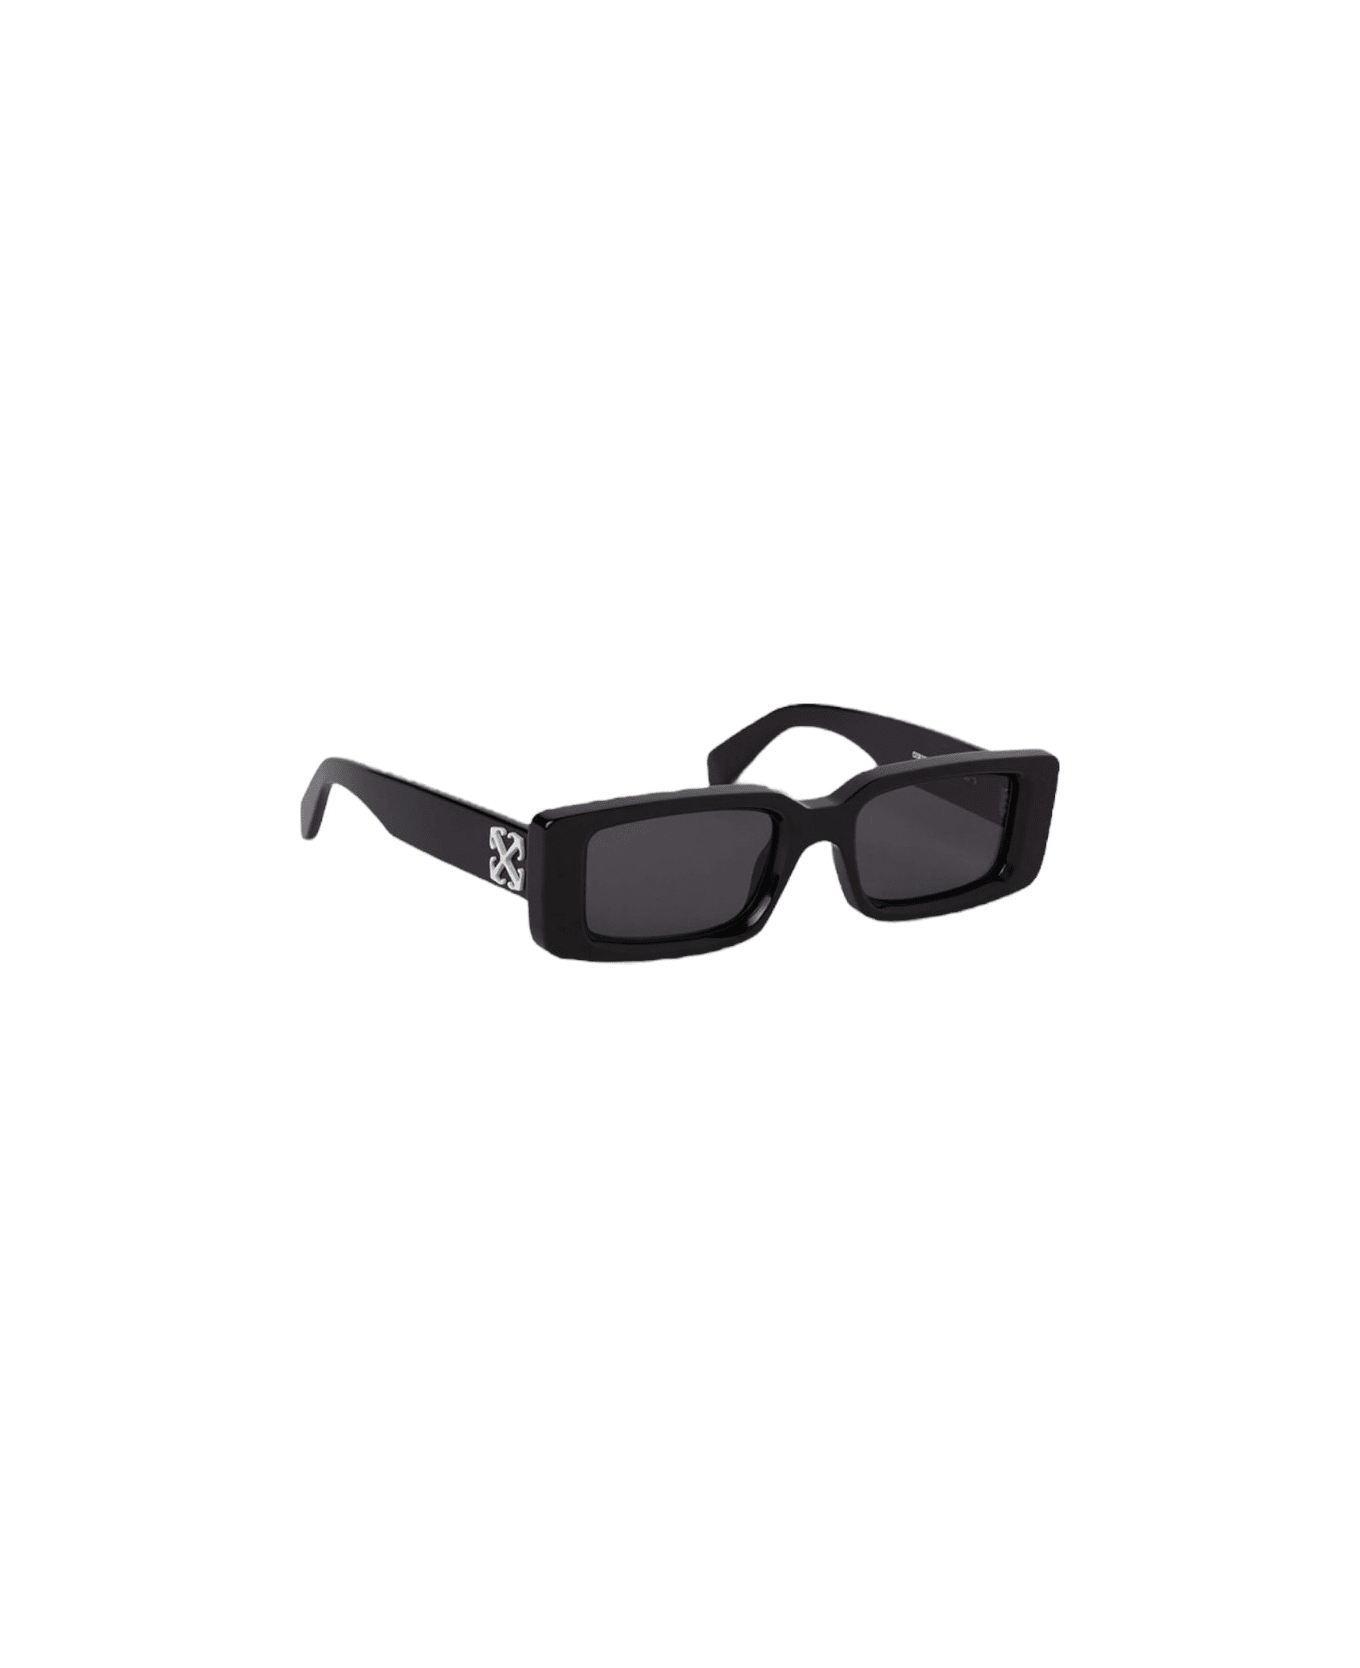 Off-White Arthur - Oeri127 Sunglasses サングラス